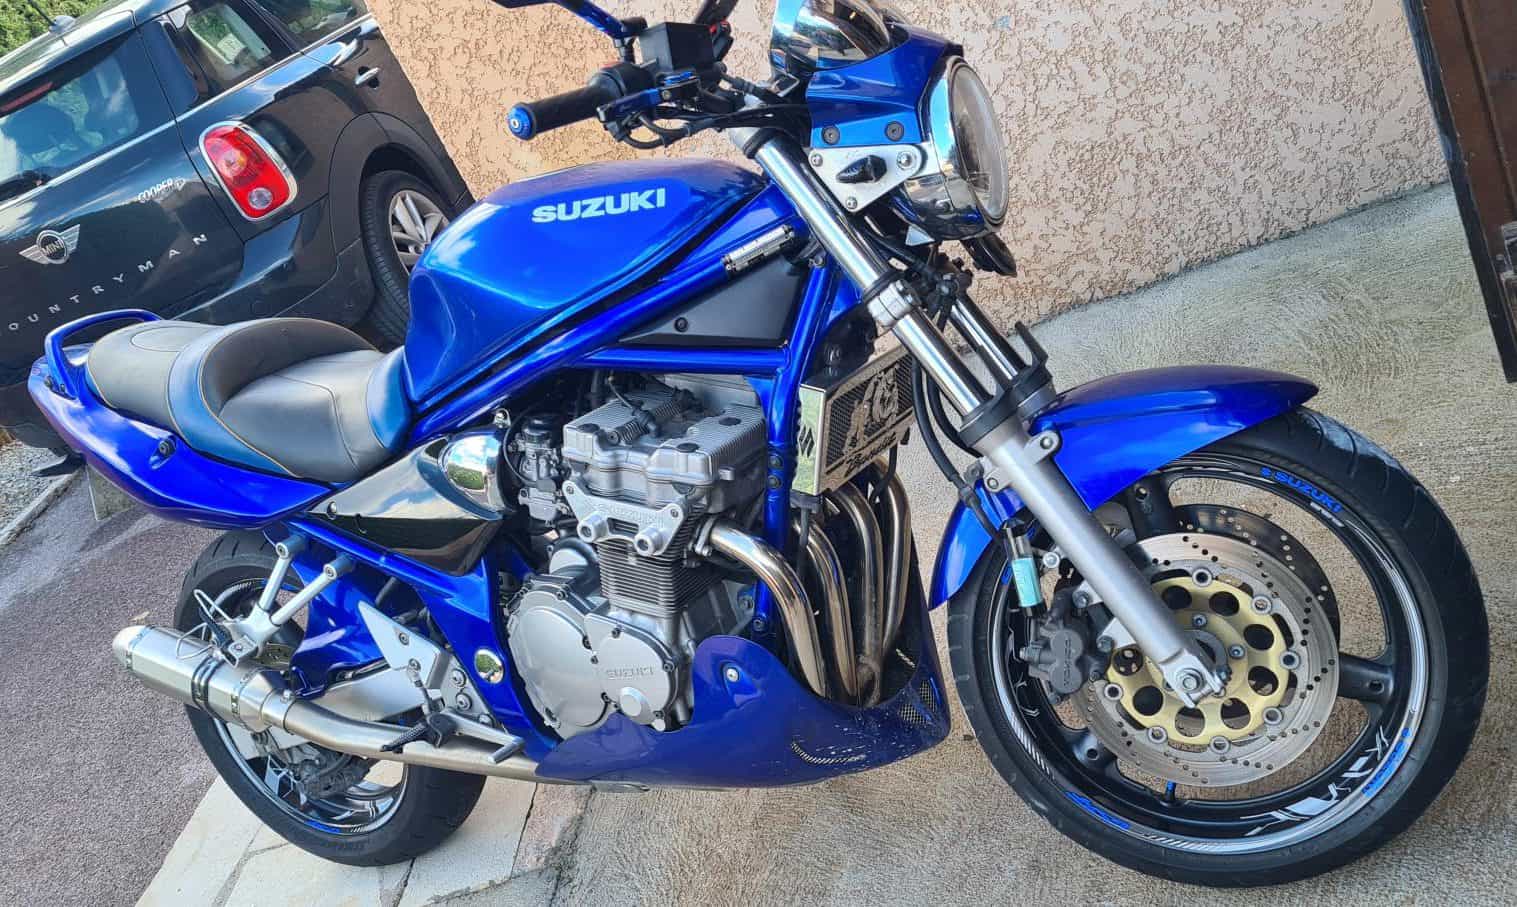 Toutes pièces Suzuki 600 bandit phase 2 - Équipement moto